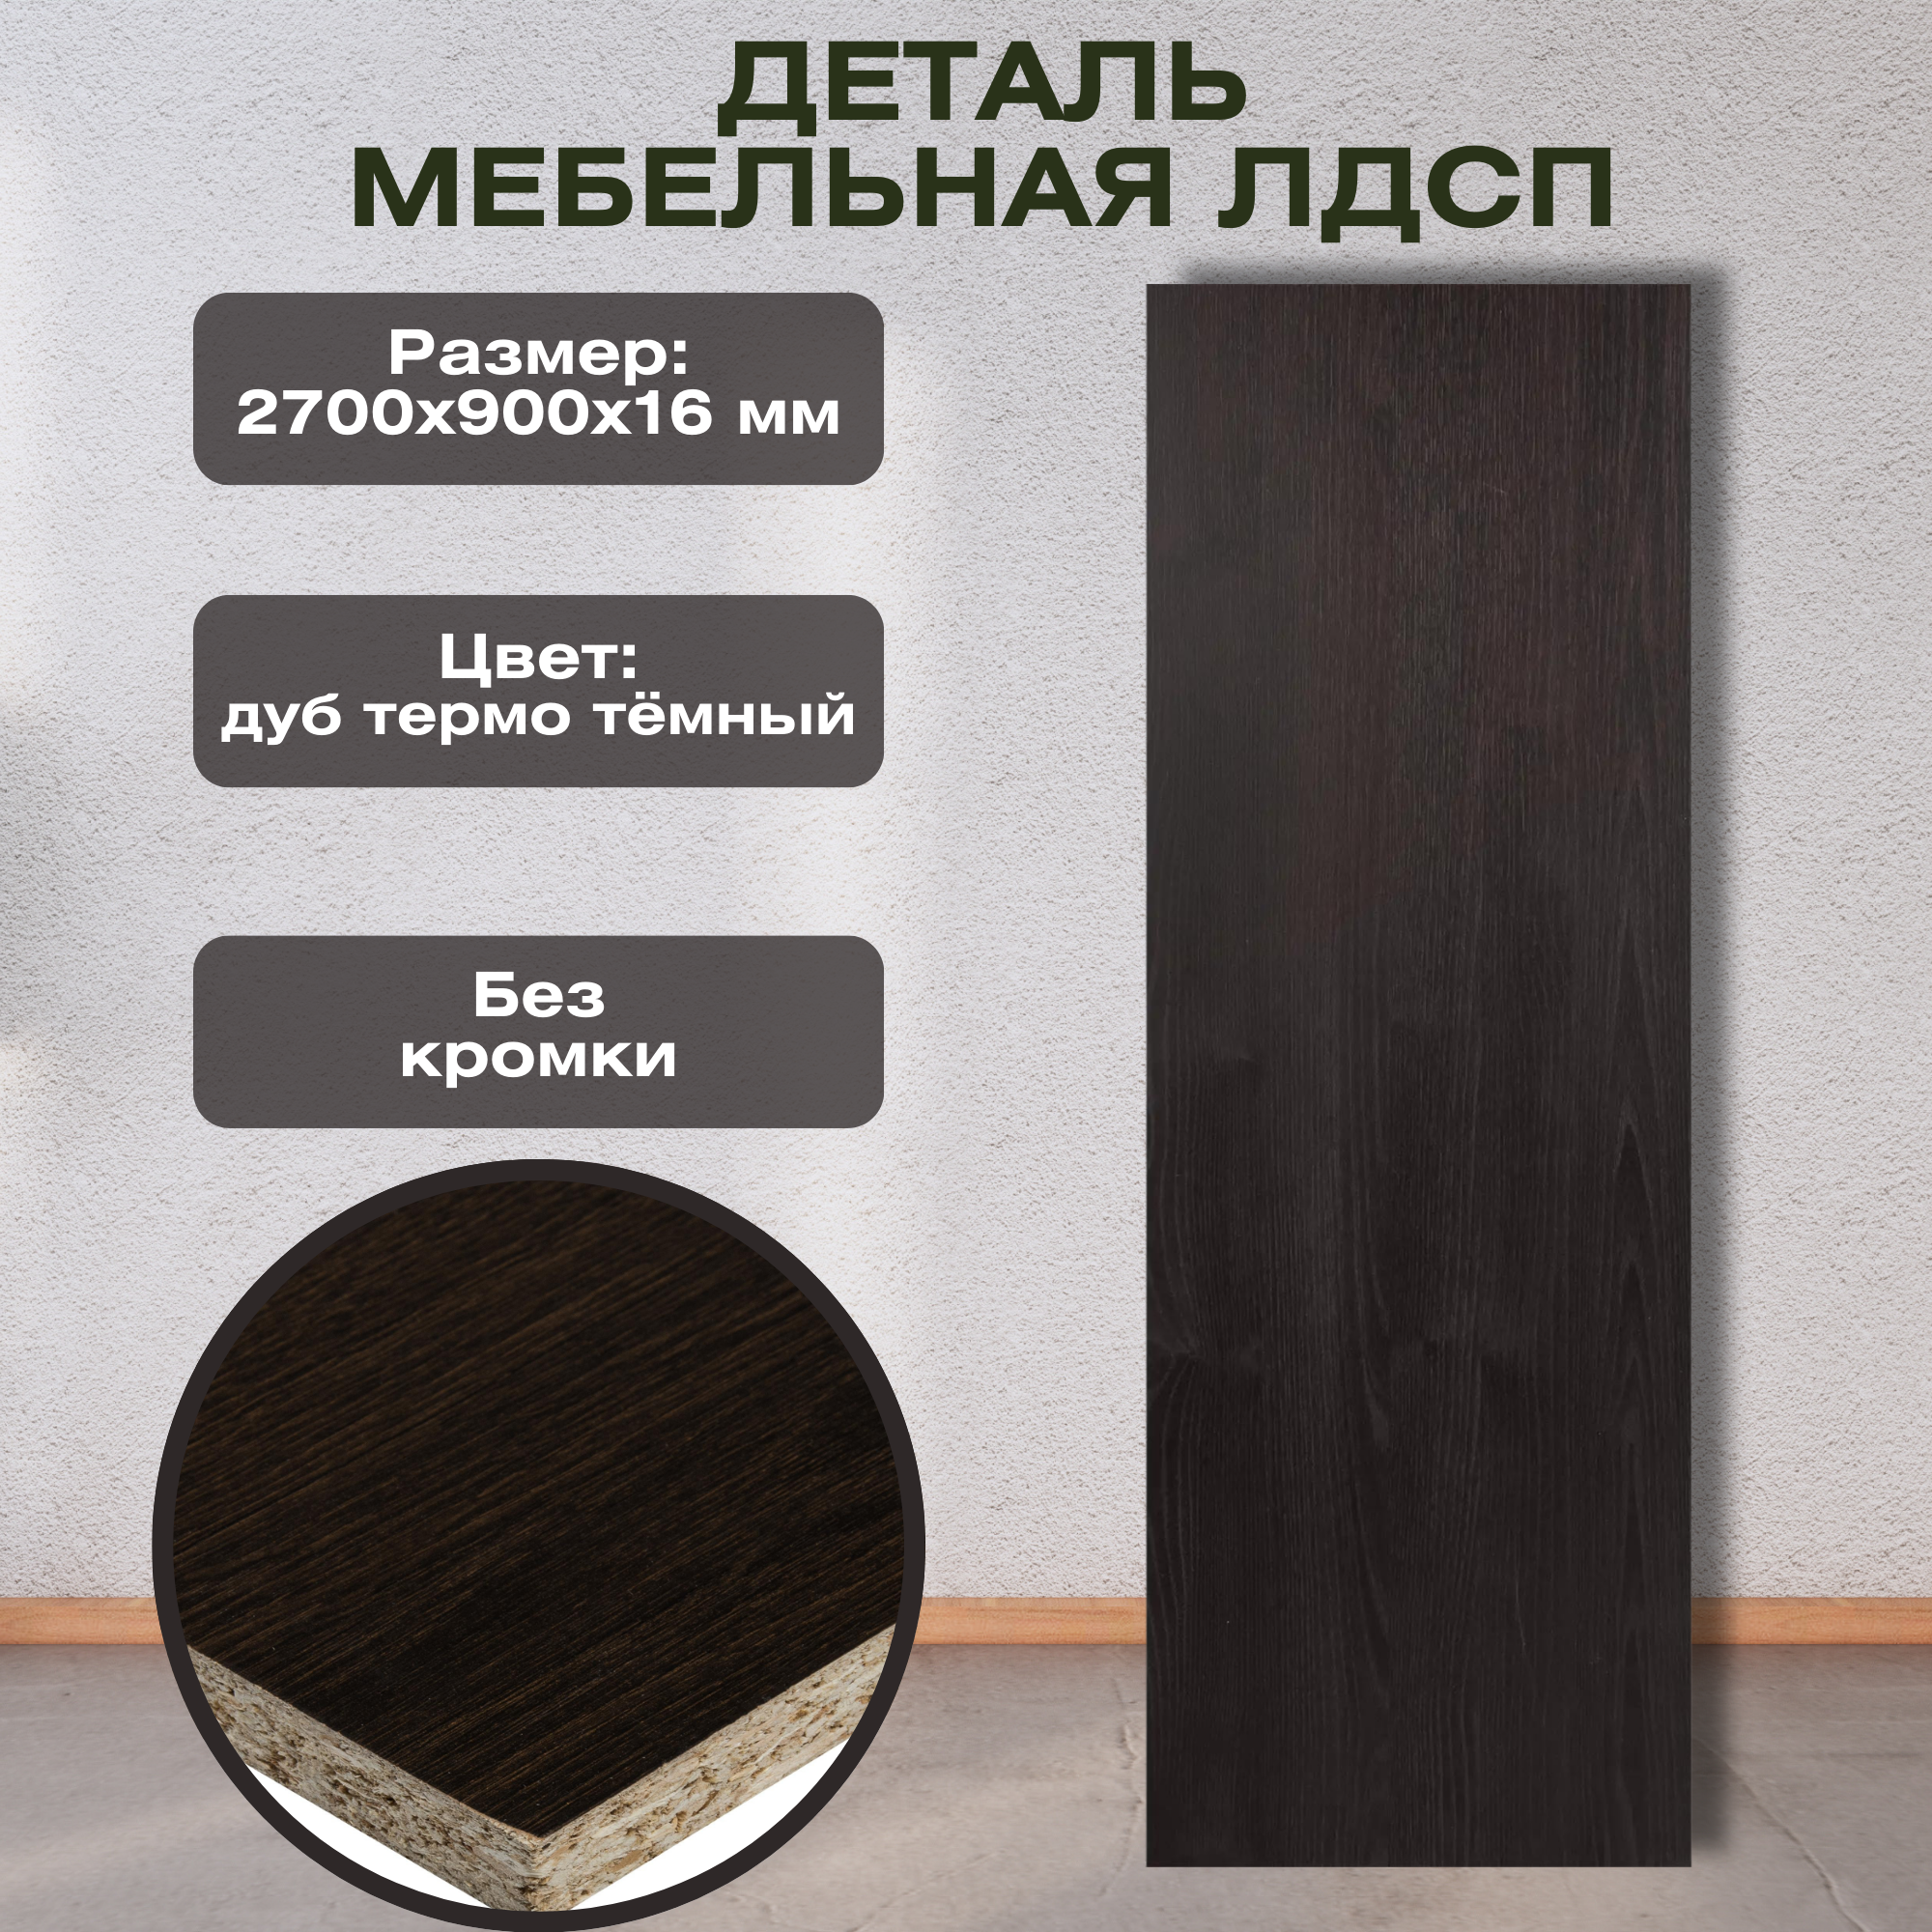 Деталь мебельная 2700x900x16 мм ЛДСП, дуб термо тёмный, без кромки, с имитацией поверхности древесины.